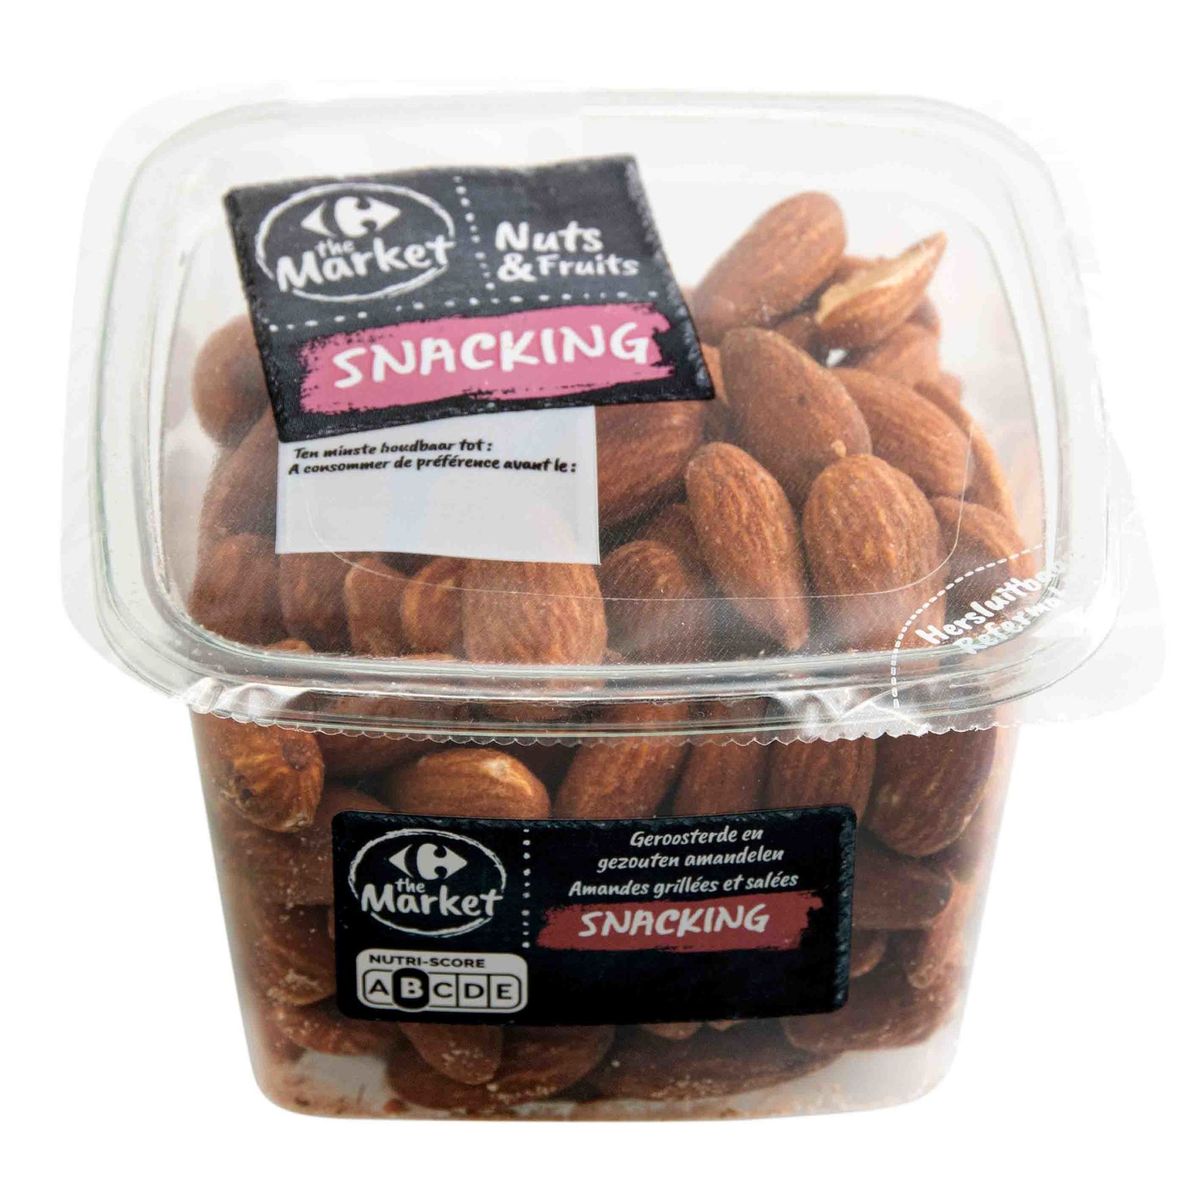 Carrefour Nuts & Fruits Geroosterde & Gezouten Amandelen 200 g